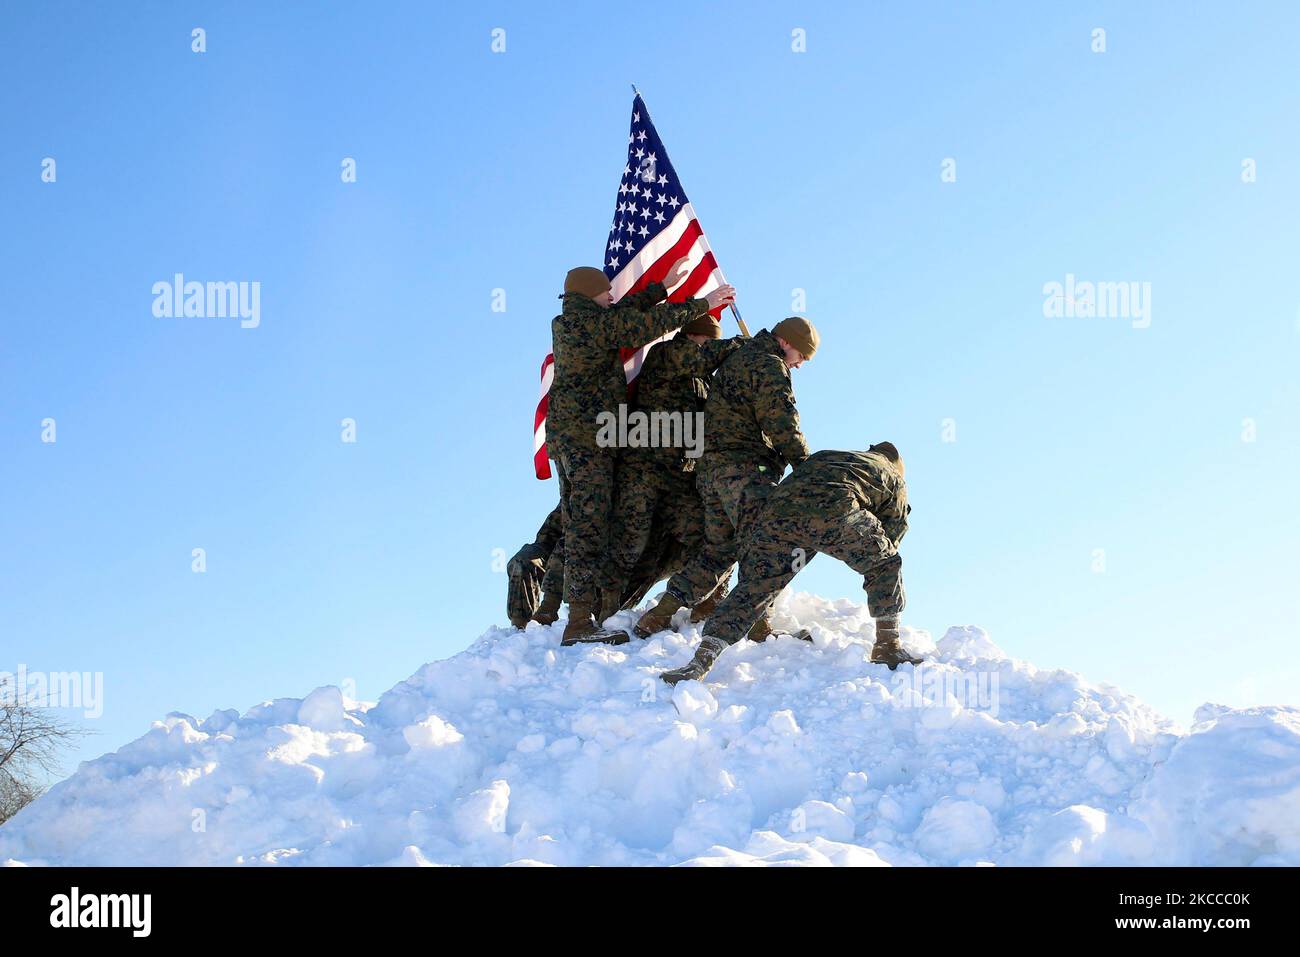 Les Marines américaines recréent le drapeau qui a soulevé Iwo Jima durchna chute de neige majeure dans l'Illinois. Banque D'Images